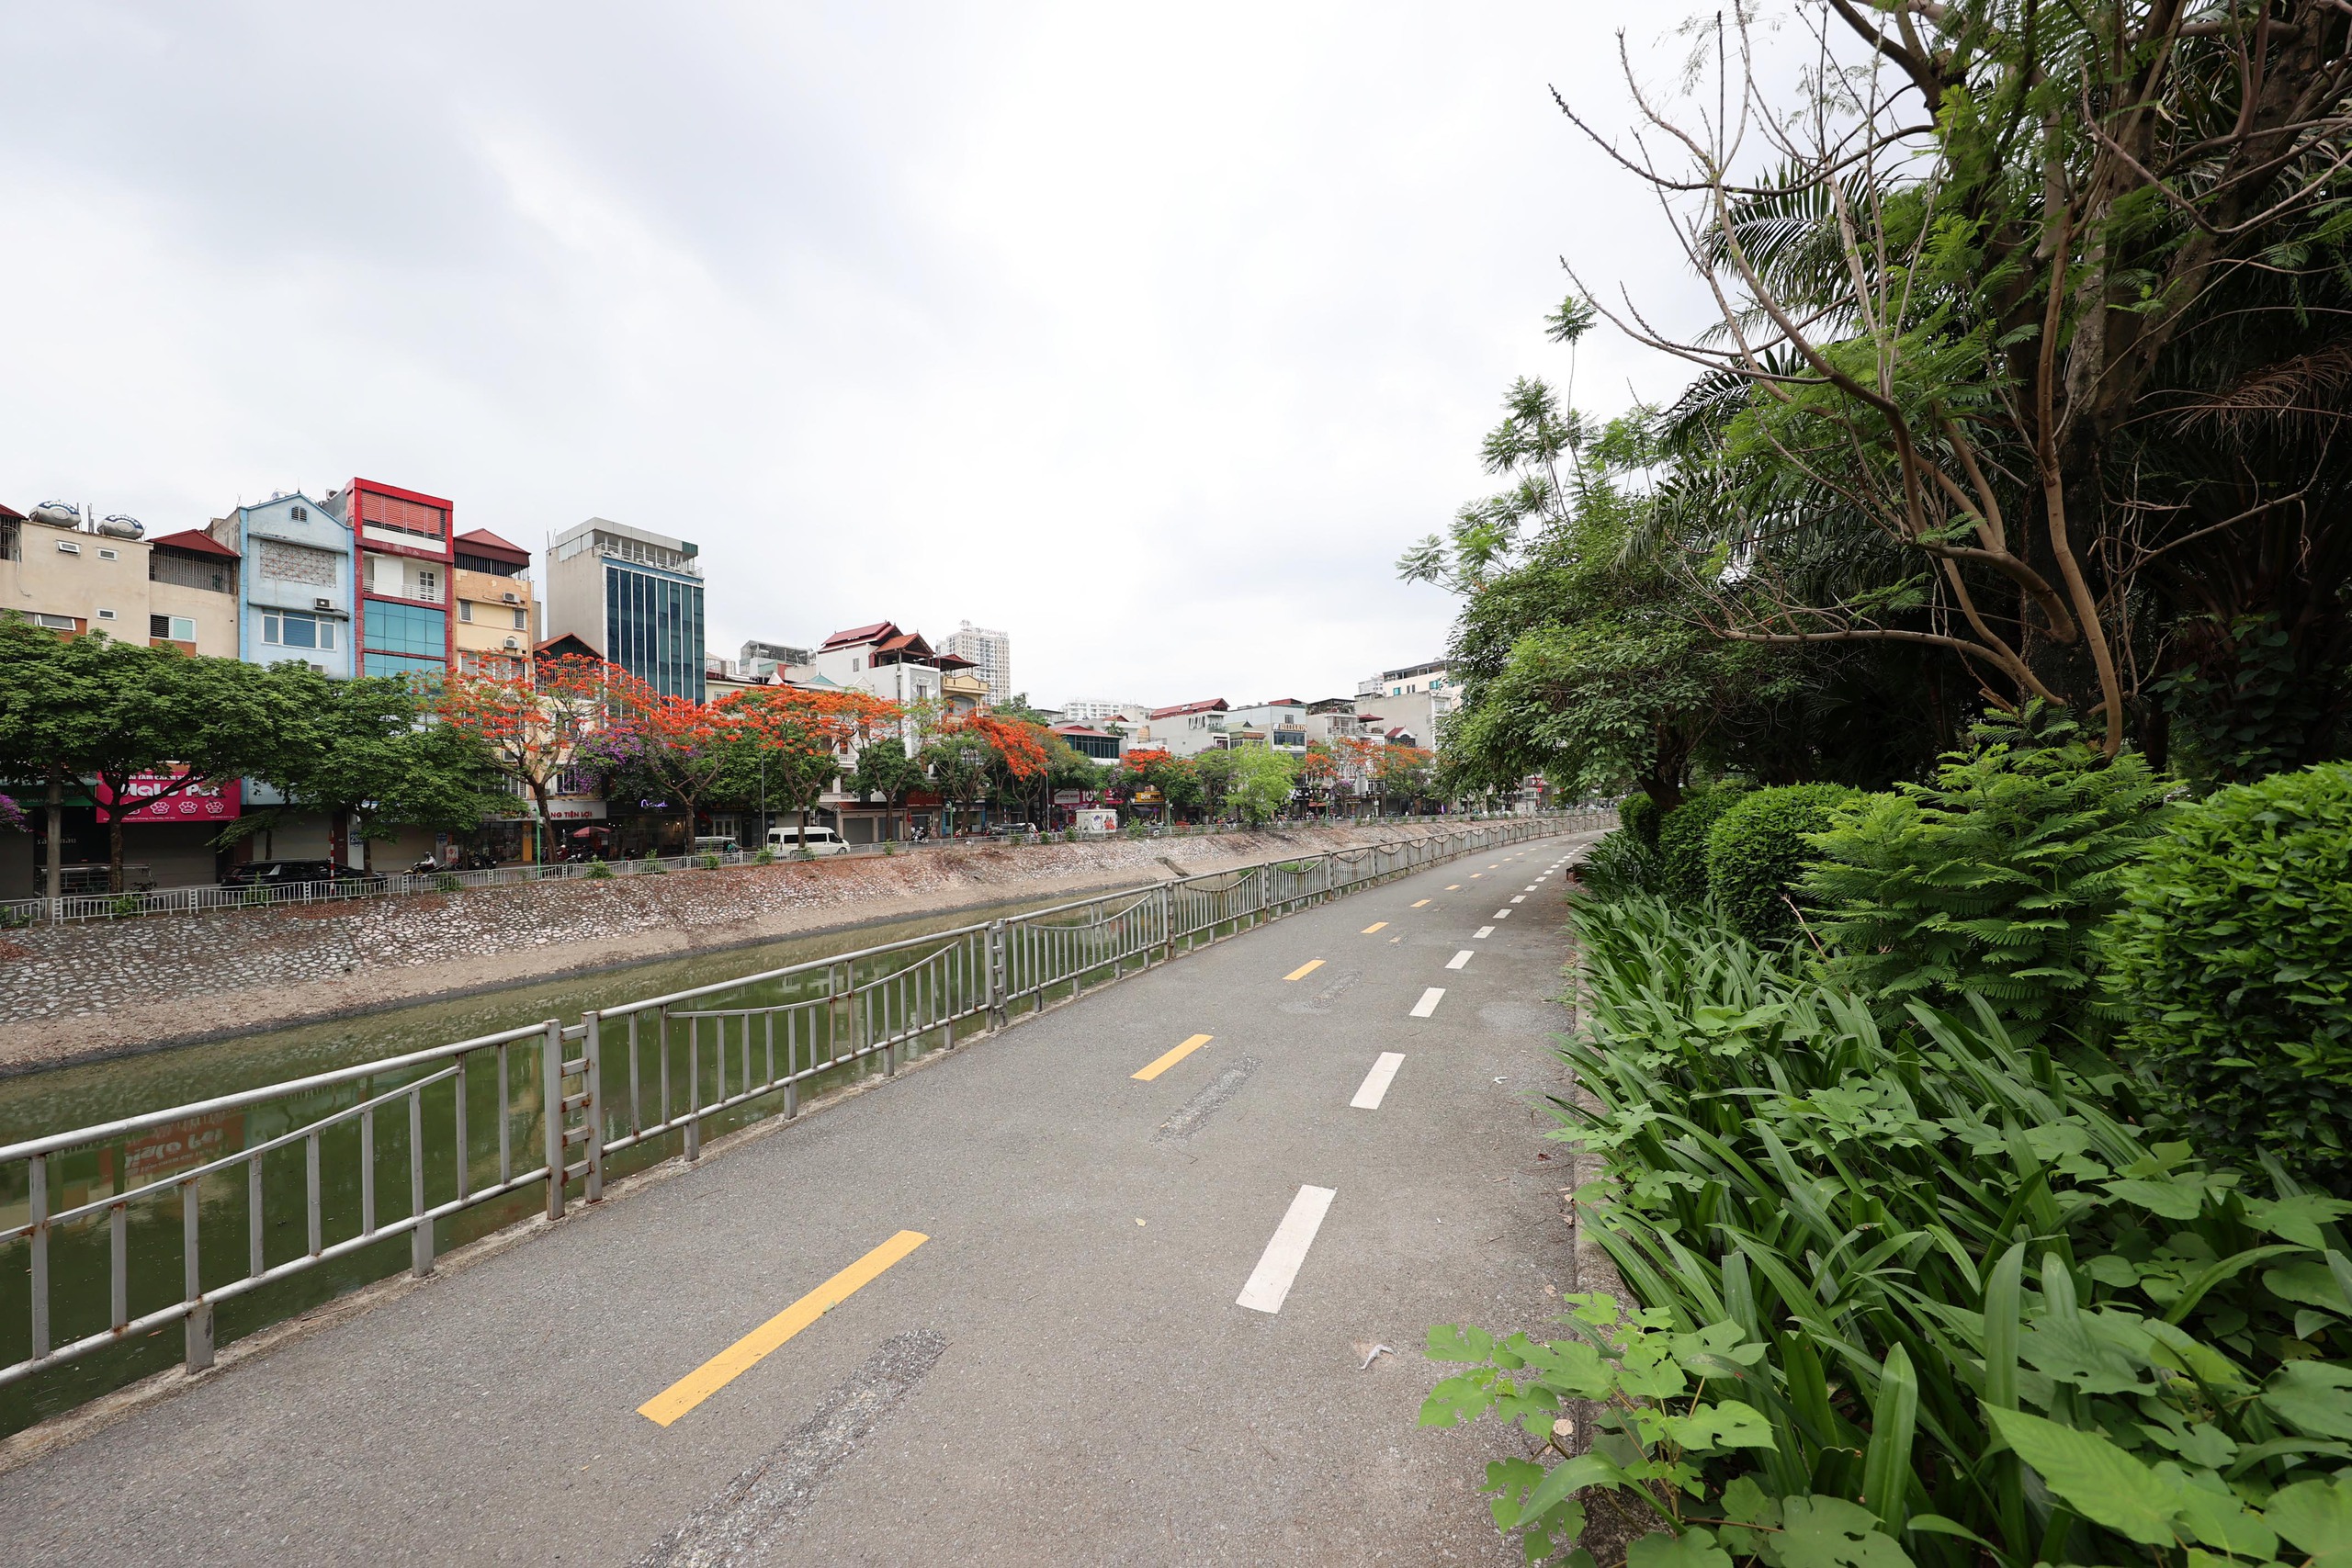 Hình ảnh thảm cỏ xanh mướt, hút mắt trên con đường chỉ dành riêng cho người đi bộ, xe đạp ở Hà Nội- Ảnh 3.